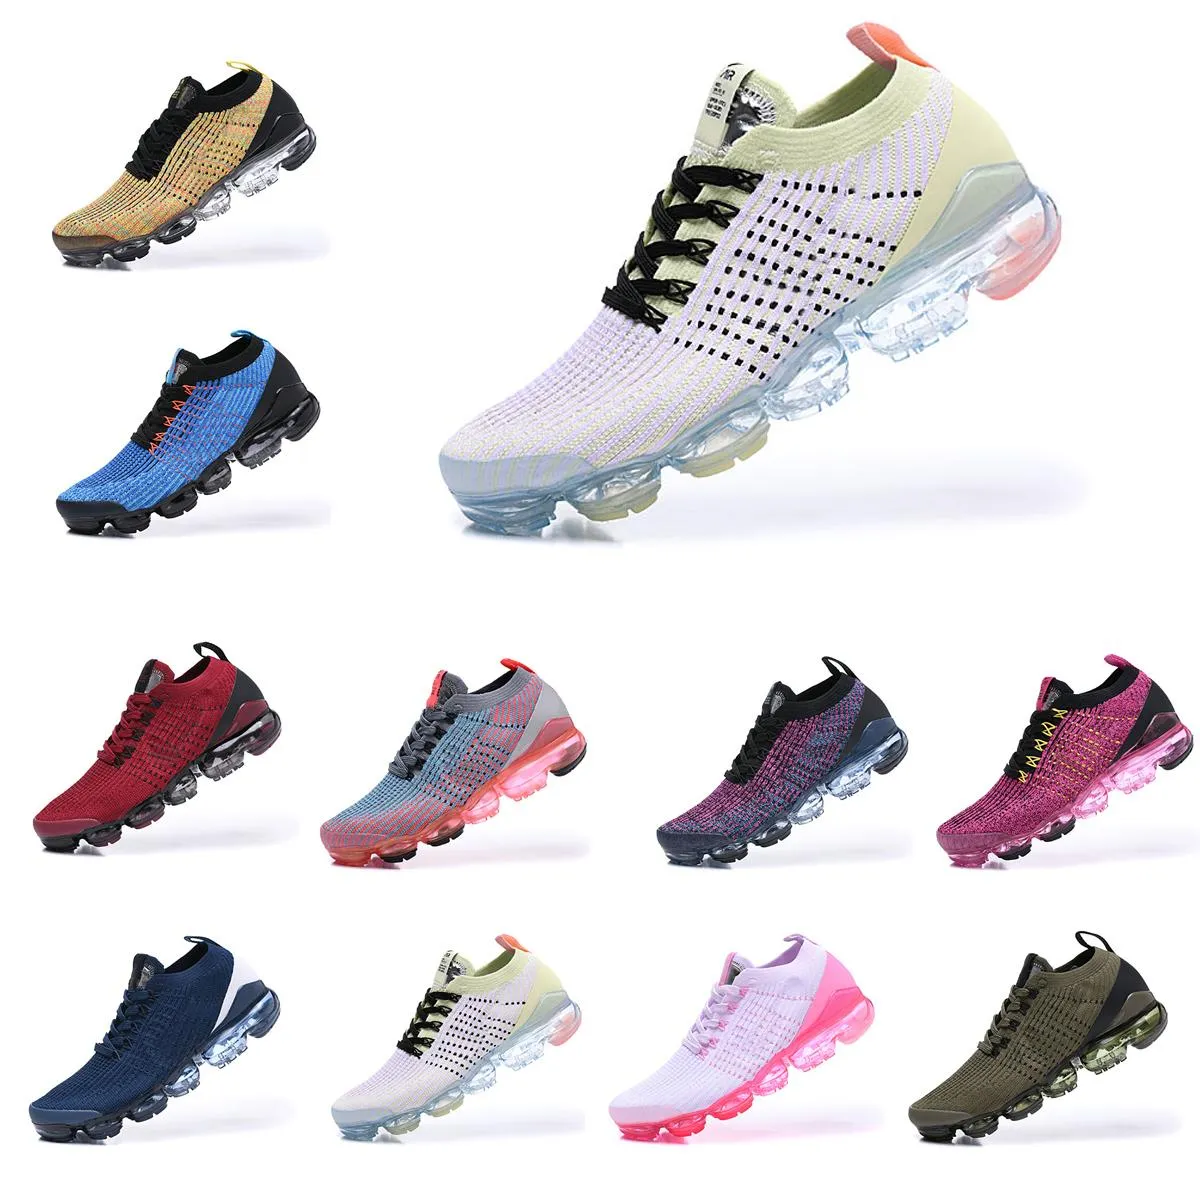 상자 2019 최고 품질 남성 신발 3.0 캐주얼 신발 남성 여성 패션 운동 스포츠 신발 디자이너 Corss Maxes 신발 크기 36-45를 실행하는